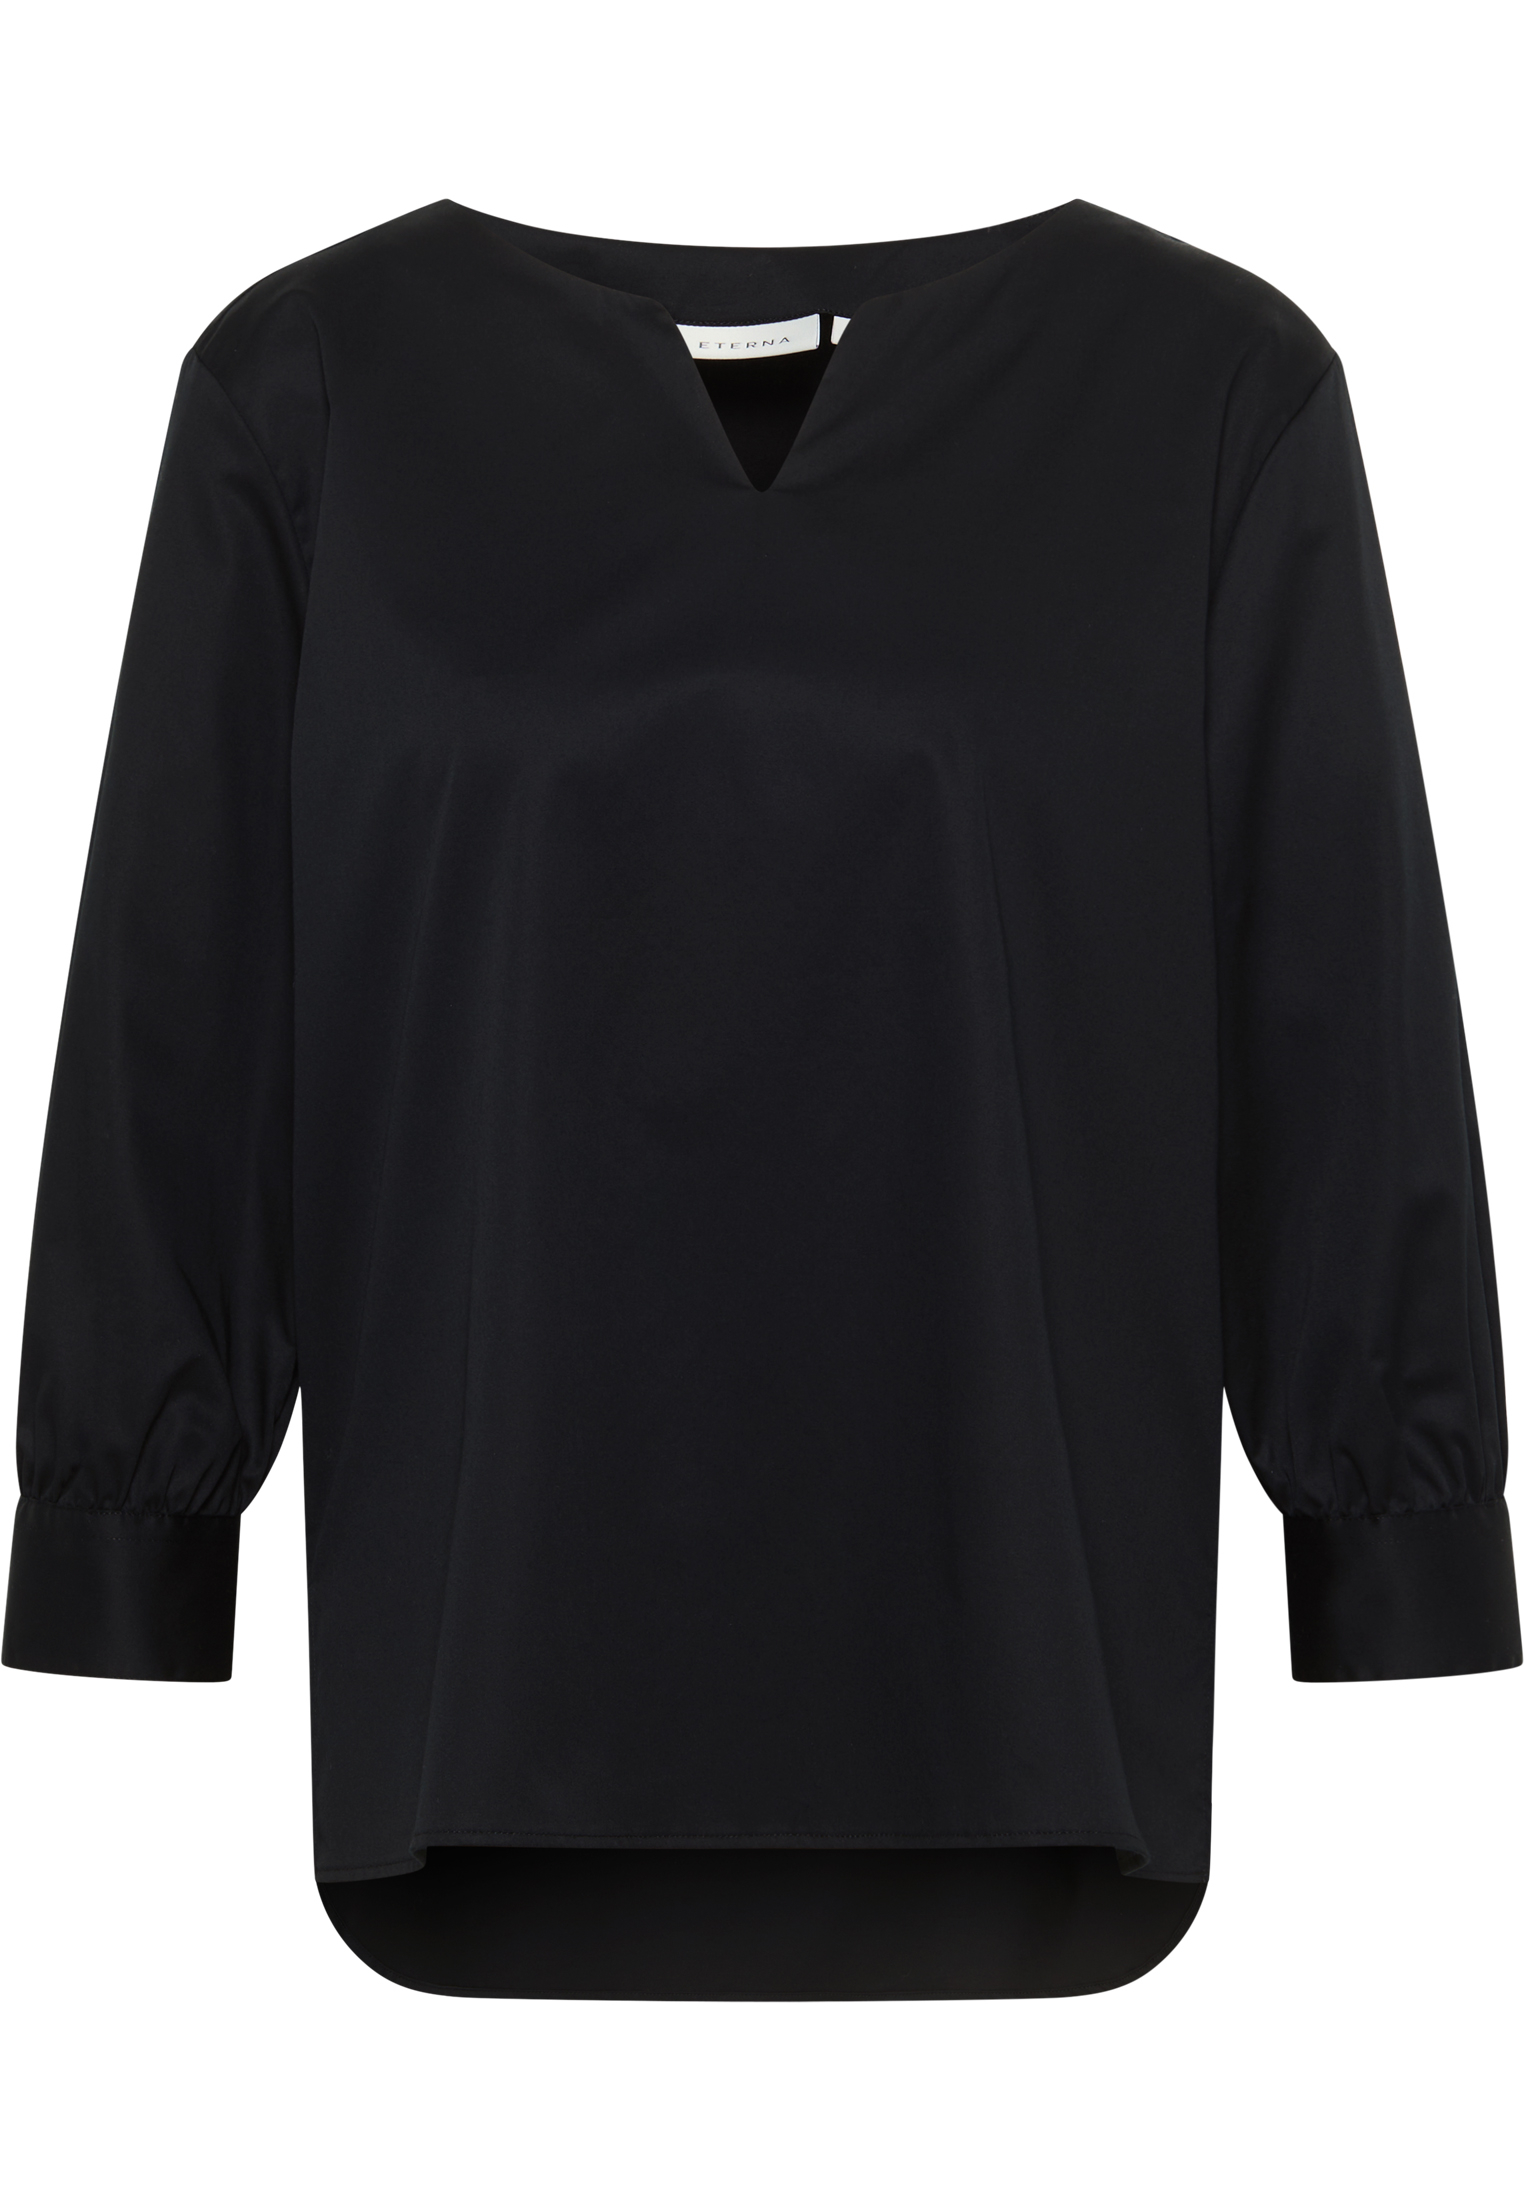 Shirt Satin Bluse 44 | schwarz 2BL03924-03-91-44-3/4 unifarben | schwarz 3/4-Arm | in |